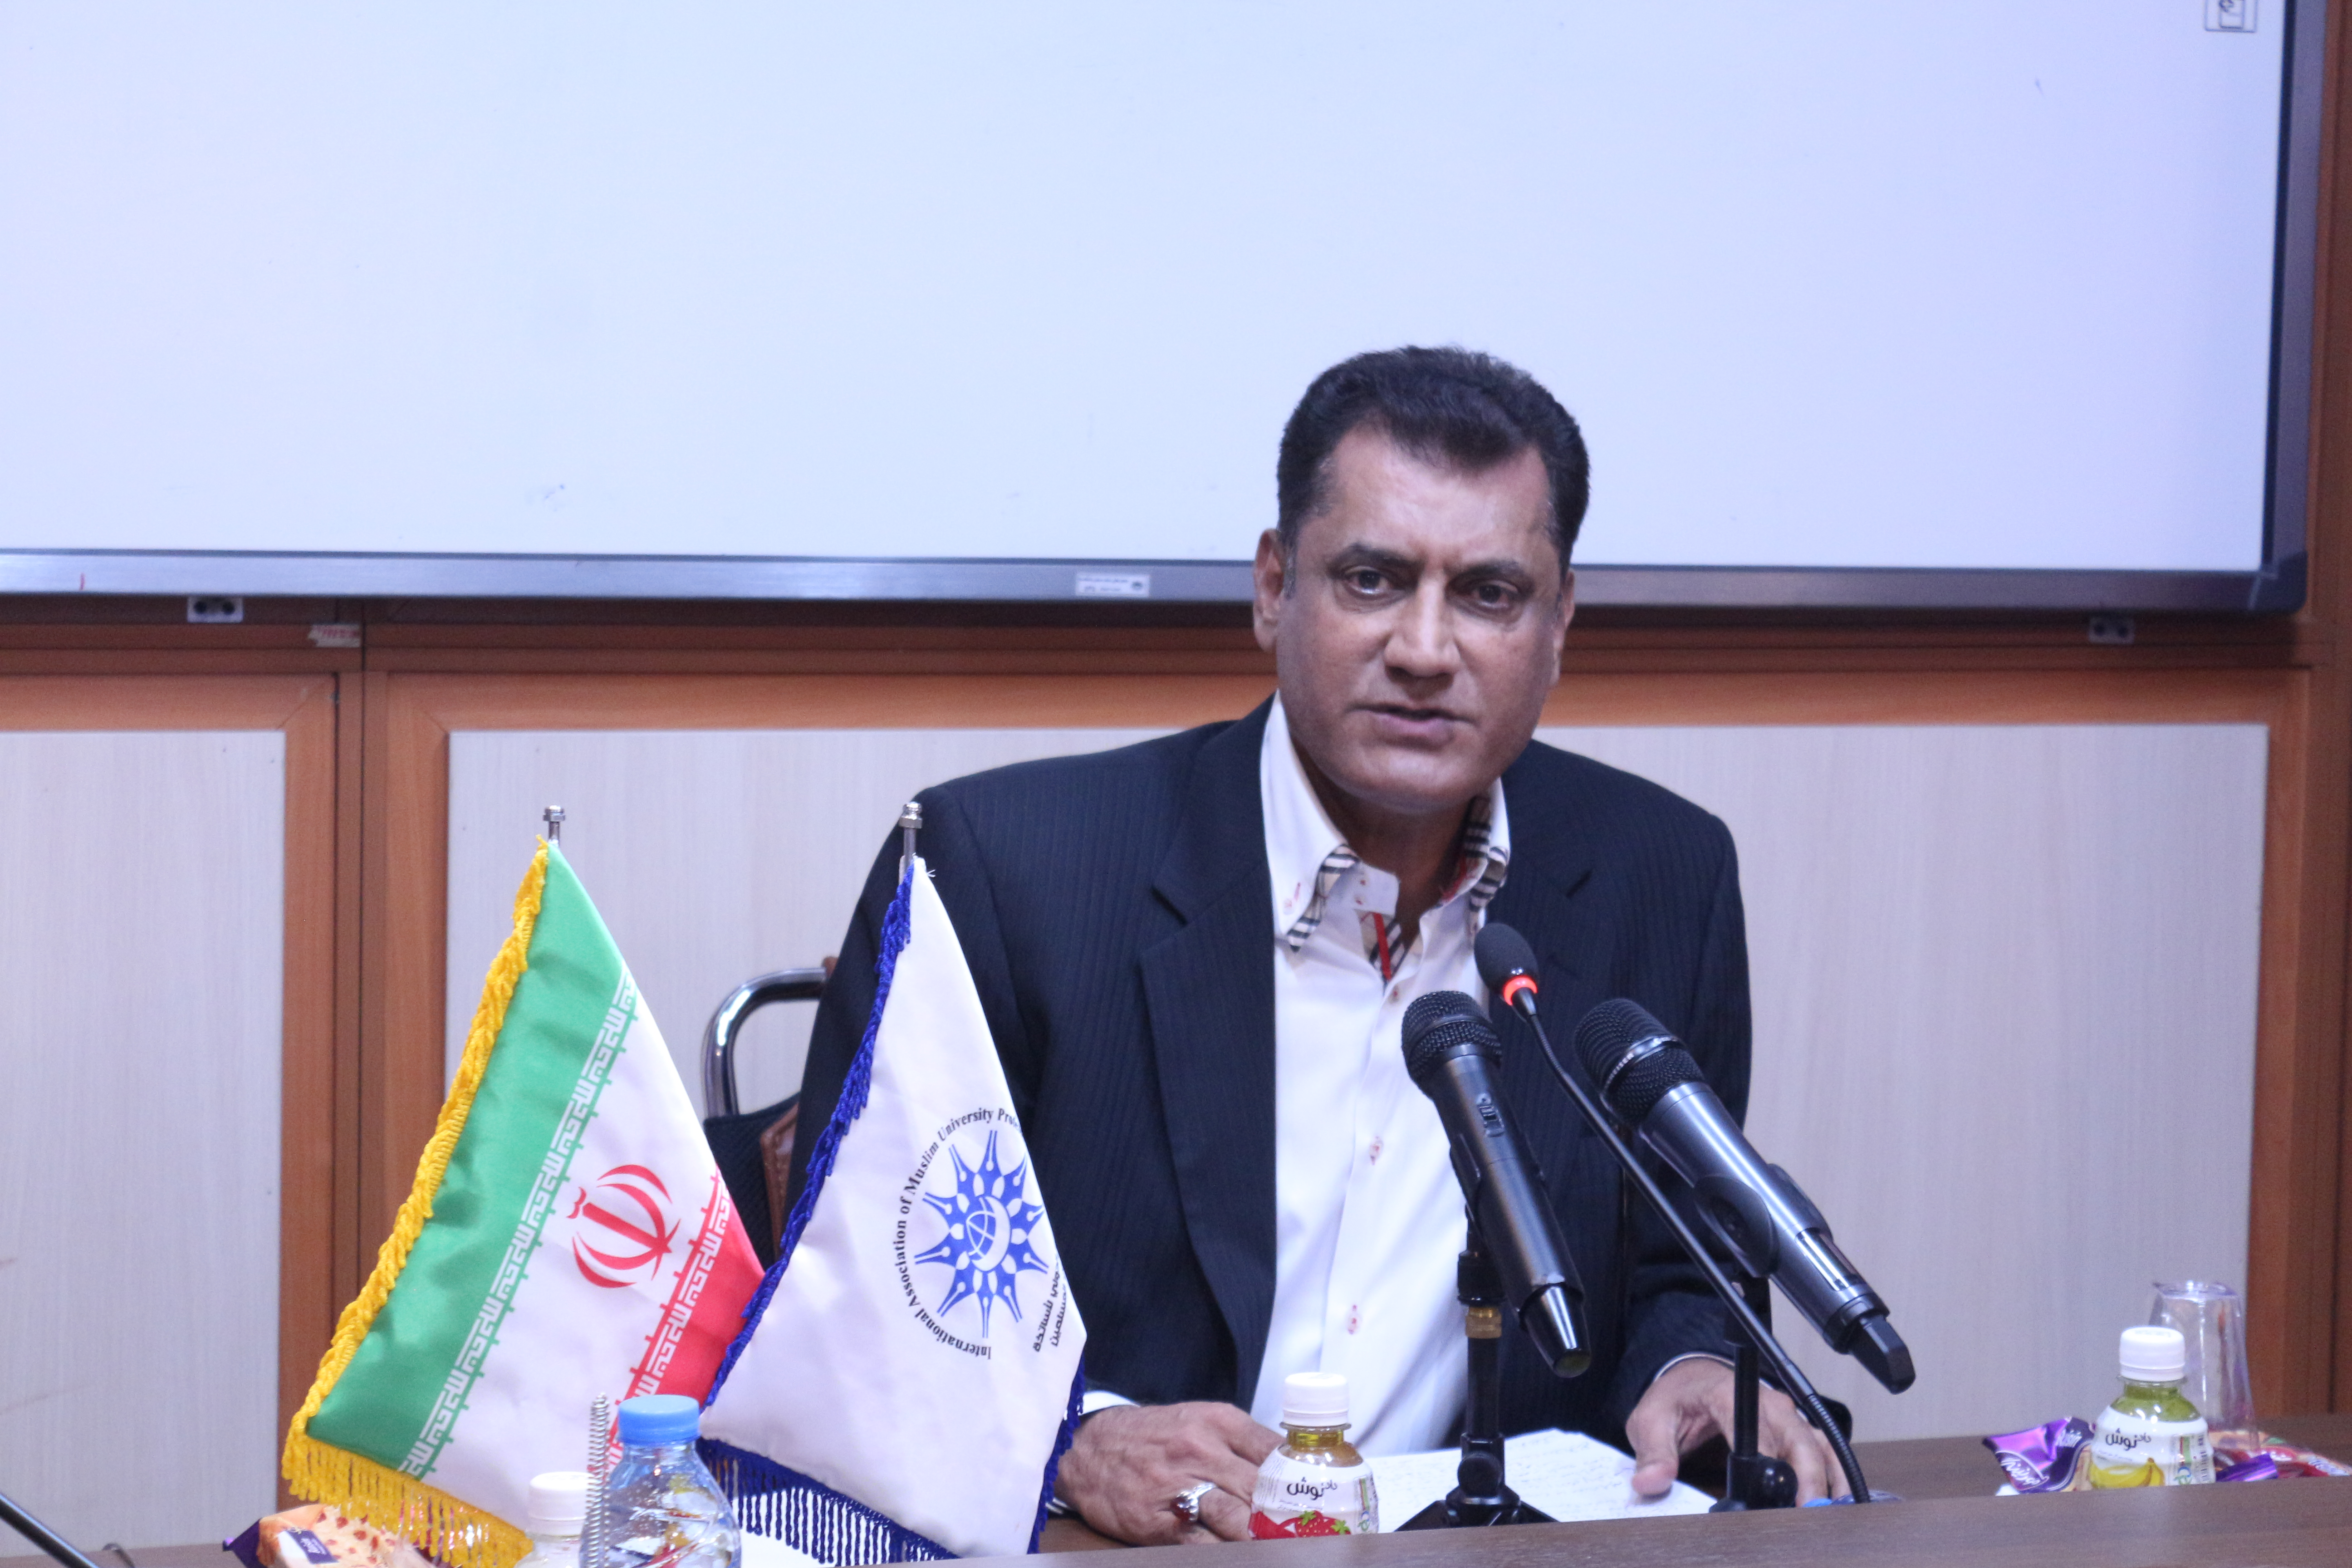 سخنرانی دکتر محمد الطائی در نشست تخصصی «کنفرانس بغداد و آینده امنیتی منطقه»